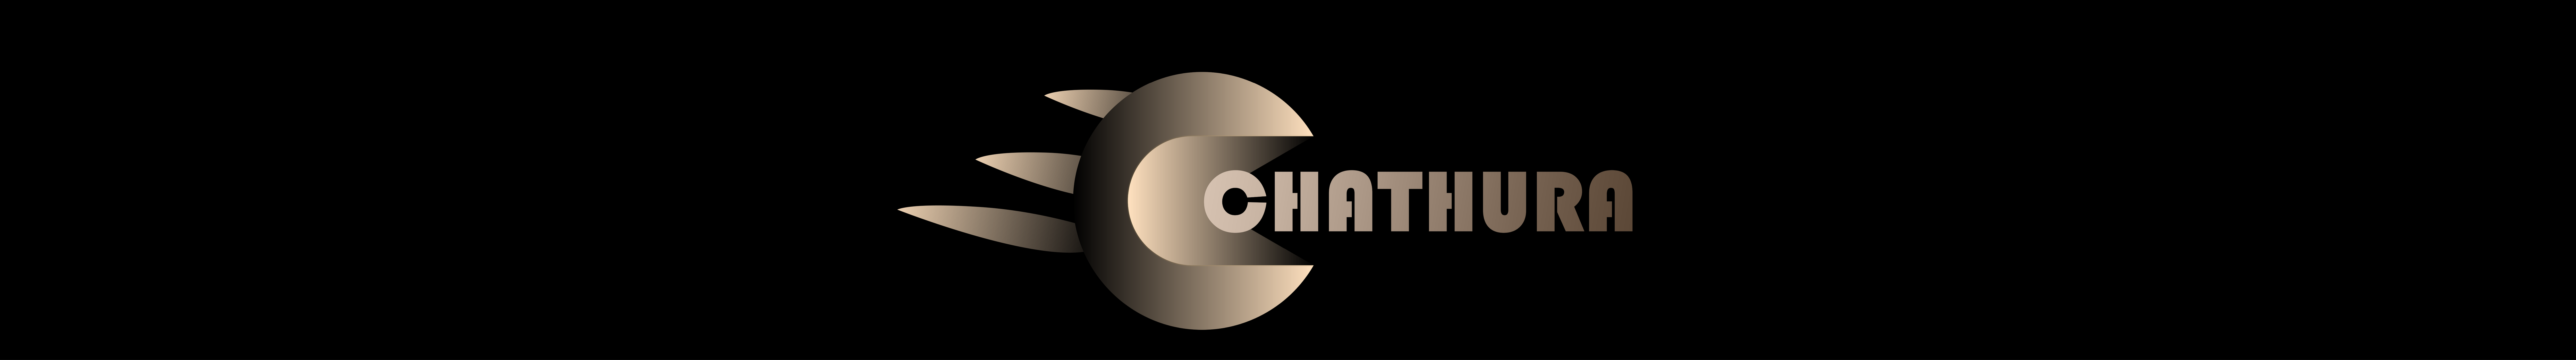 Chathura Hettiarachchi のプロファイルバナー